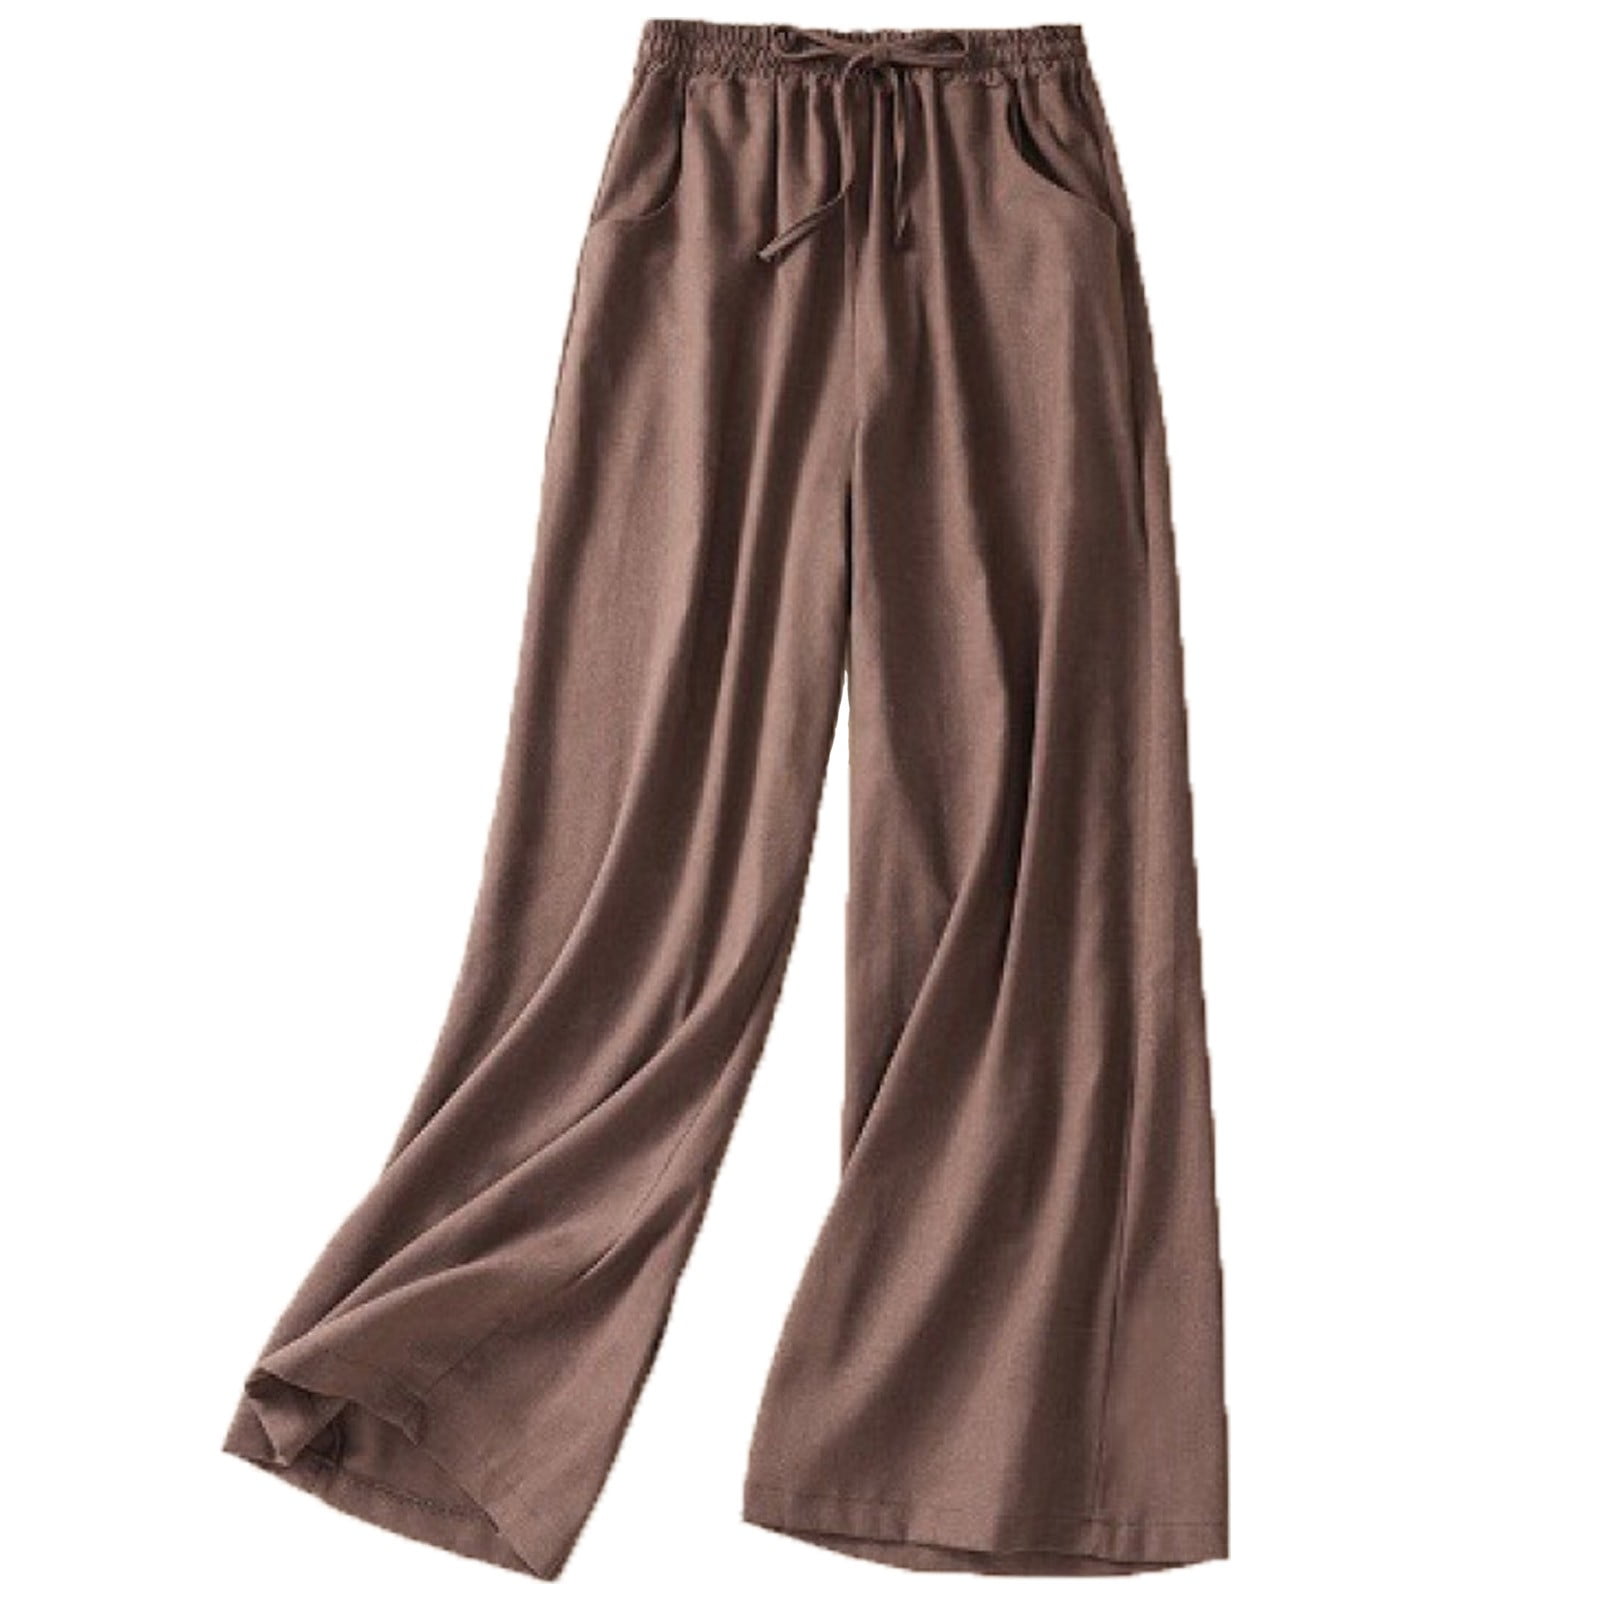 Plebaso Cotton Linen Pants for Women Solid Color Elastic Waist Home ...